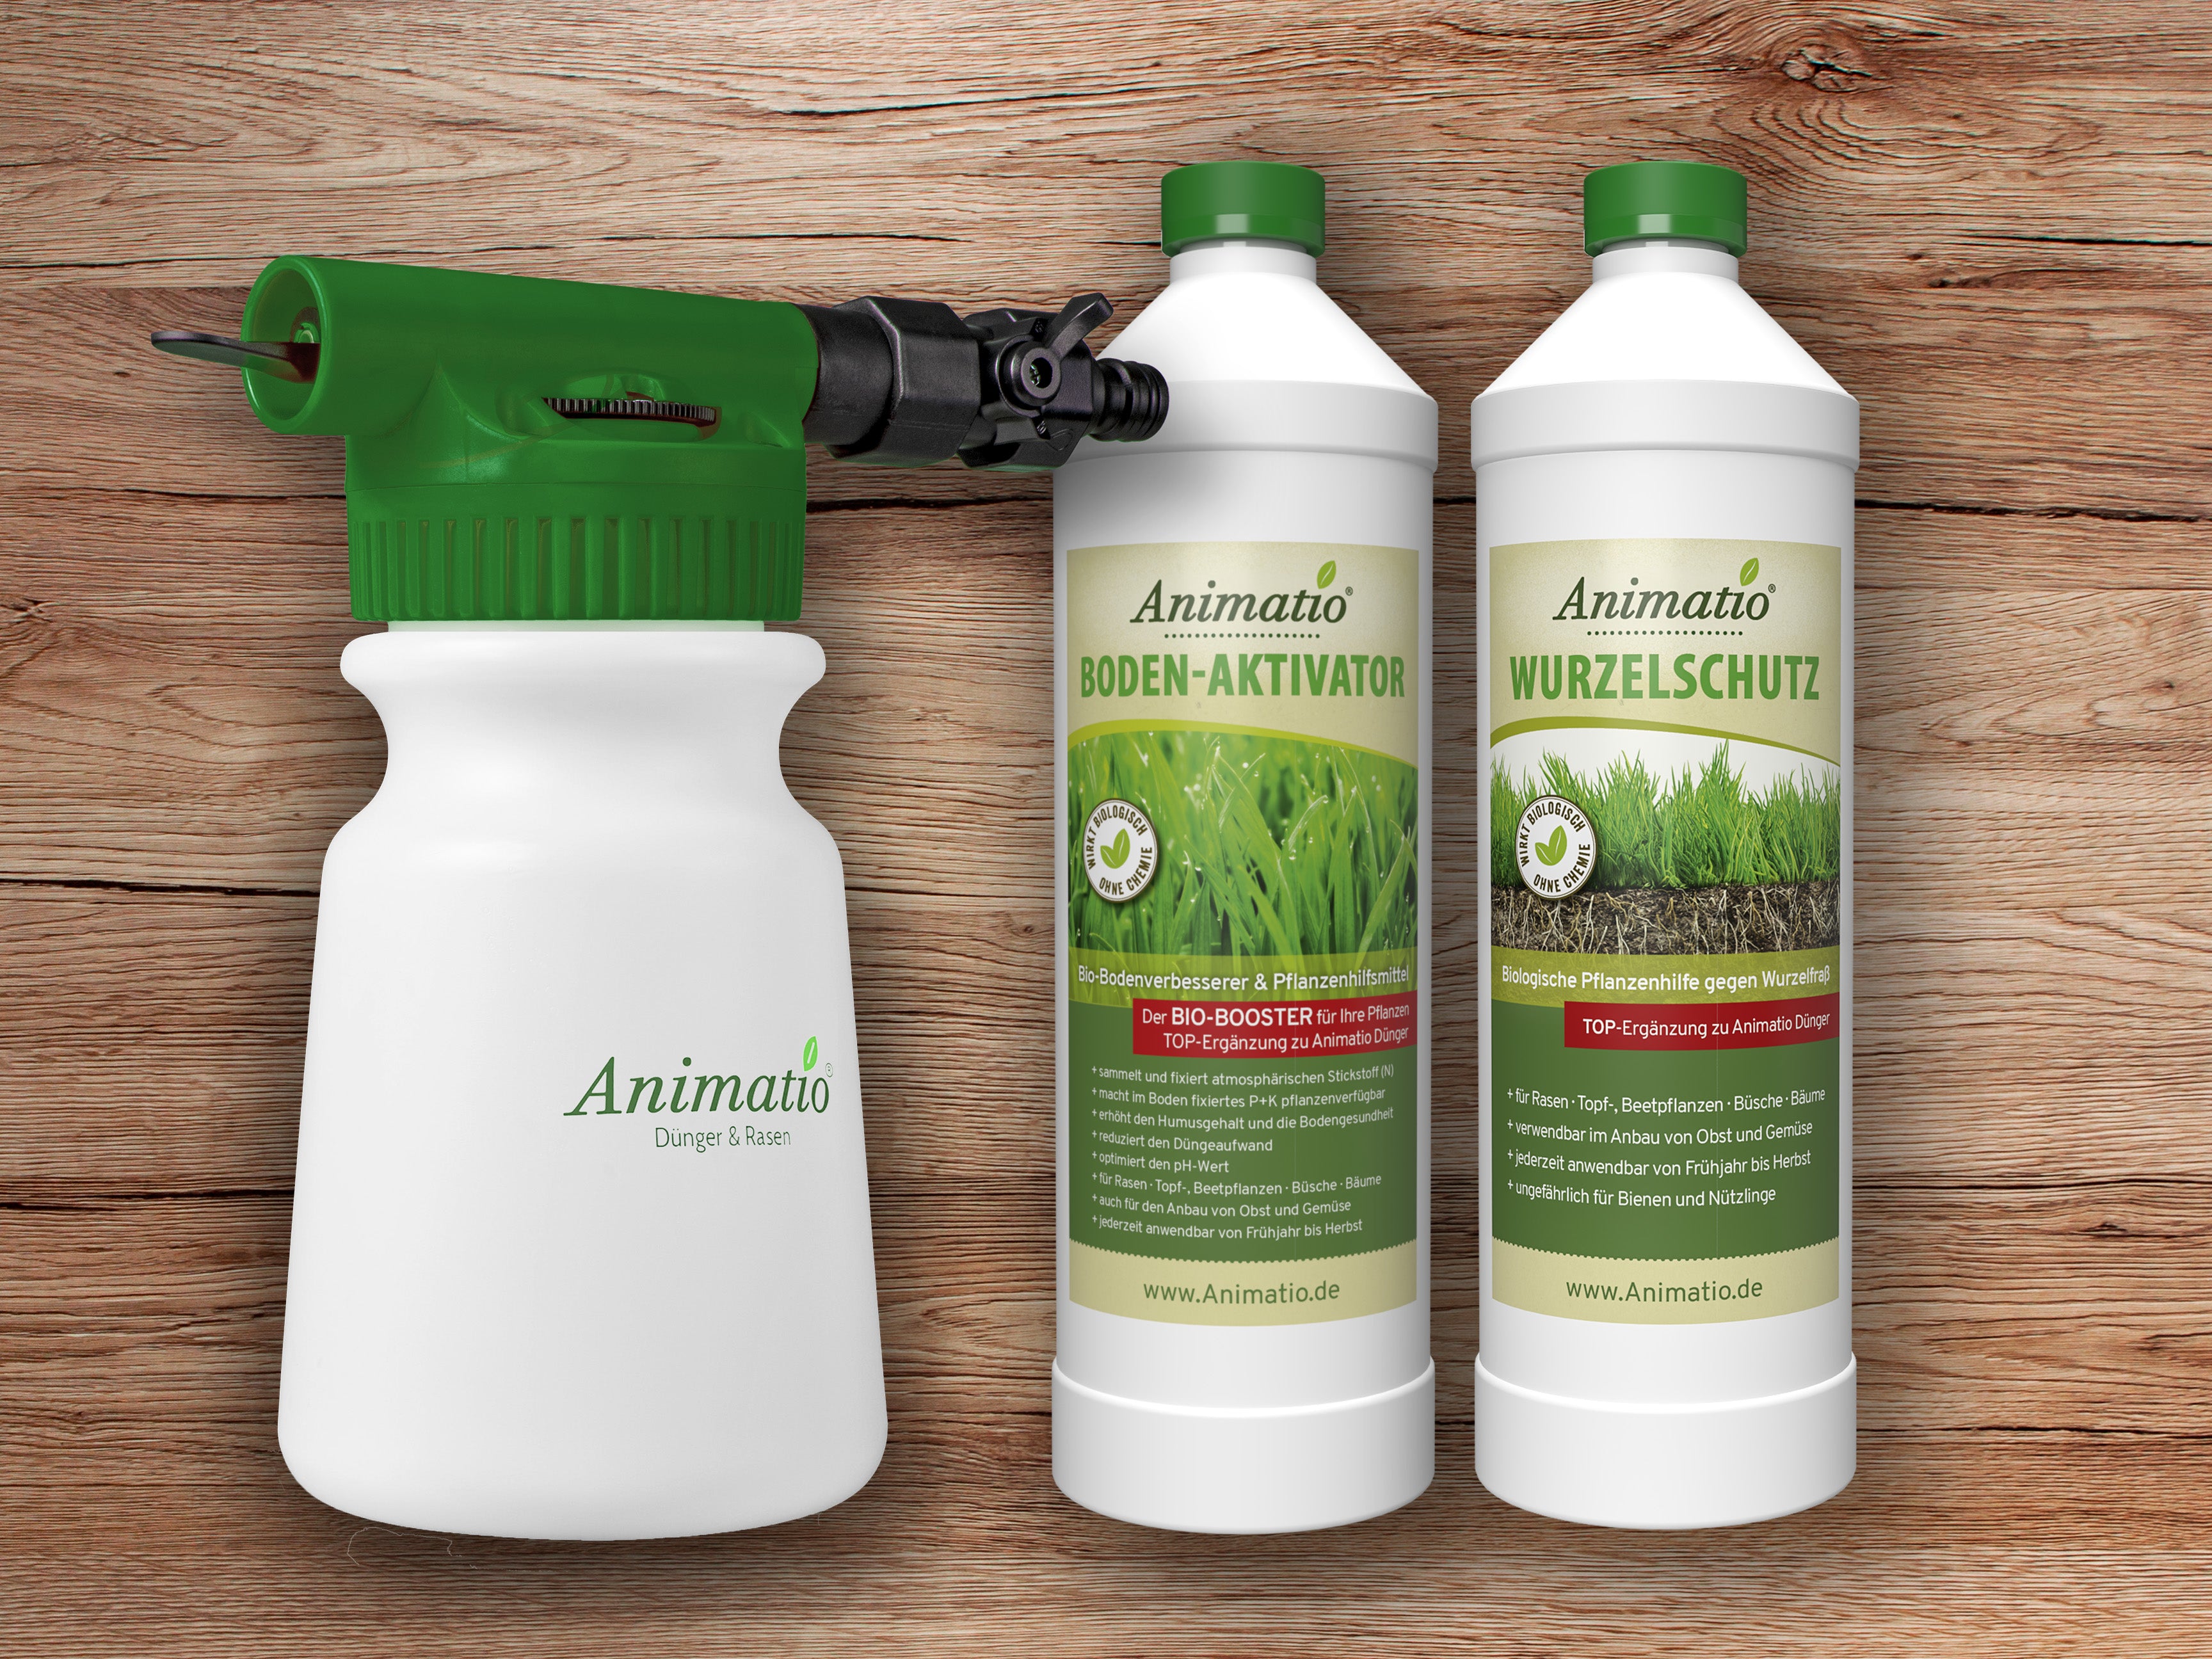 Animatio Wurzelschutz oder Bodenaktivator mit dem Animatio®-Sprayer ausbringen